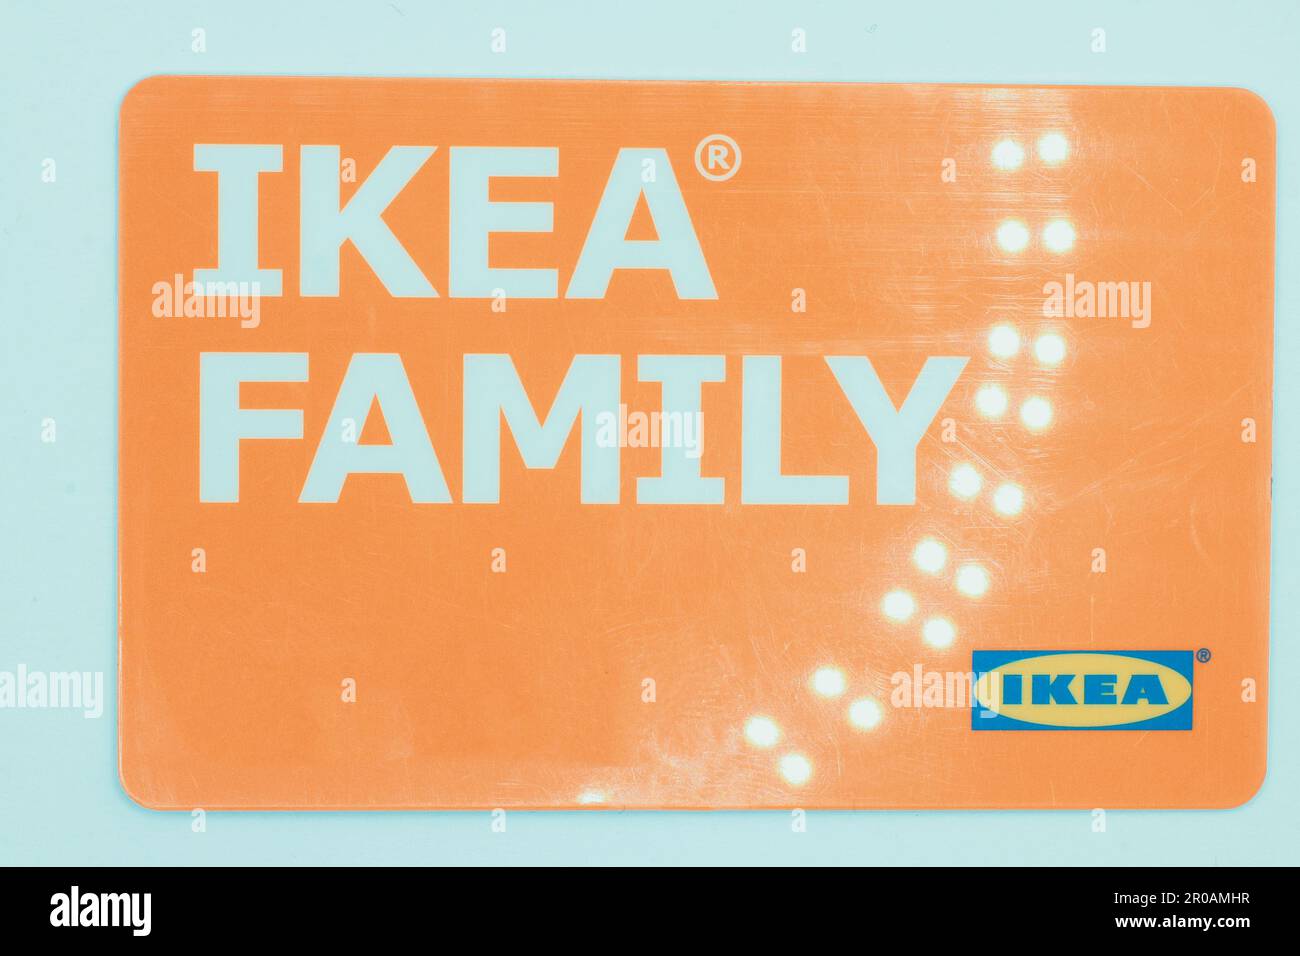 IKEA Family - IKEA